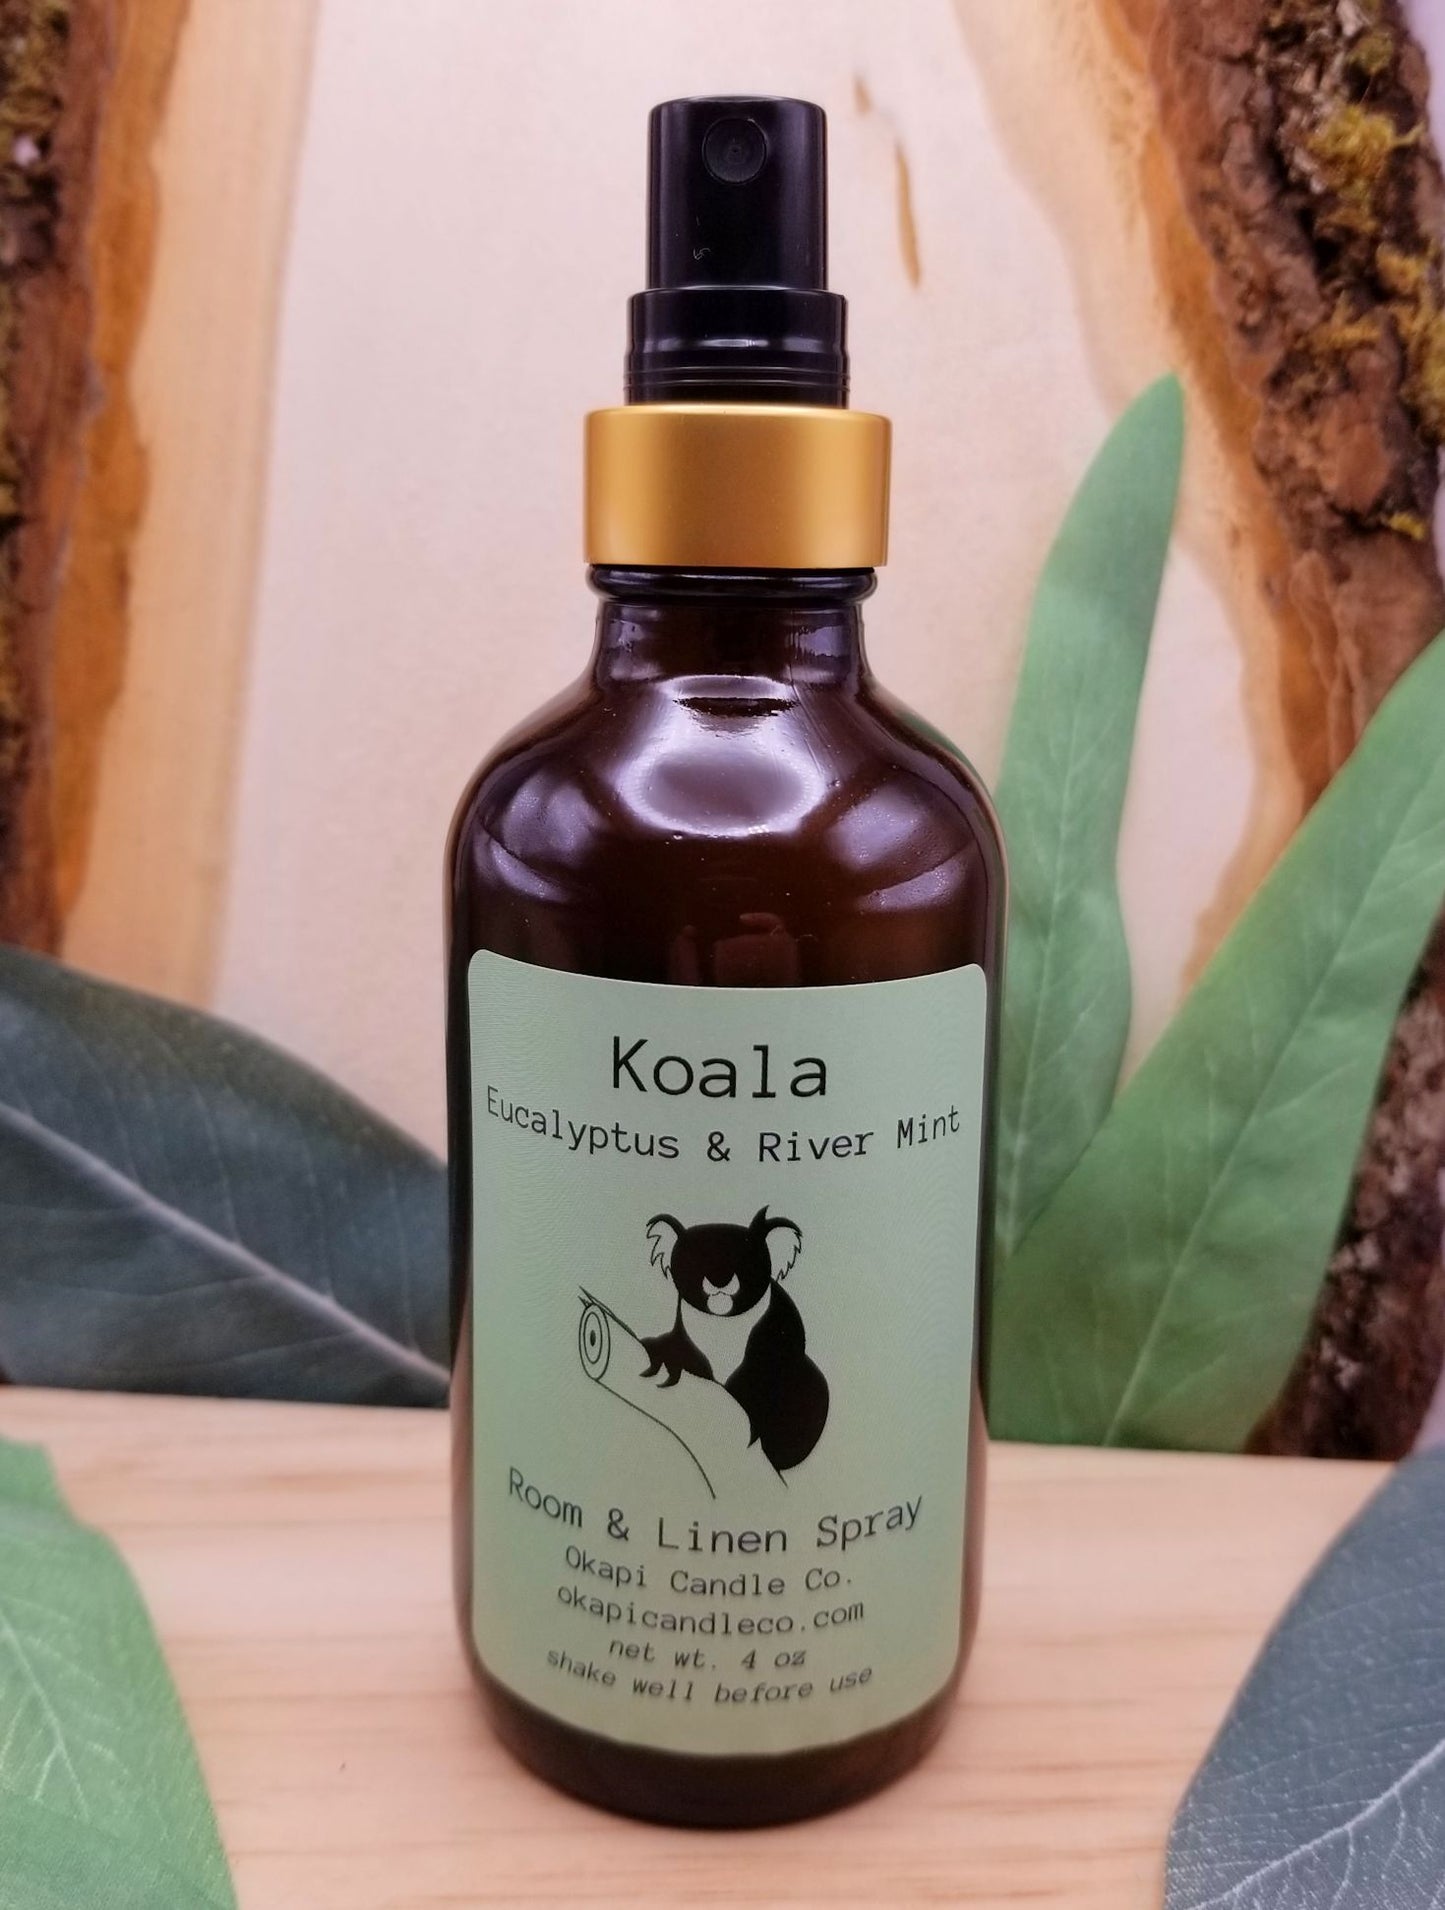 Koala Room & Linen Spray - Eucalyptus & River Mint Fragrance